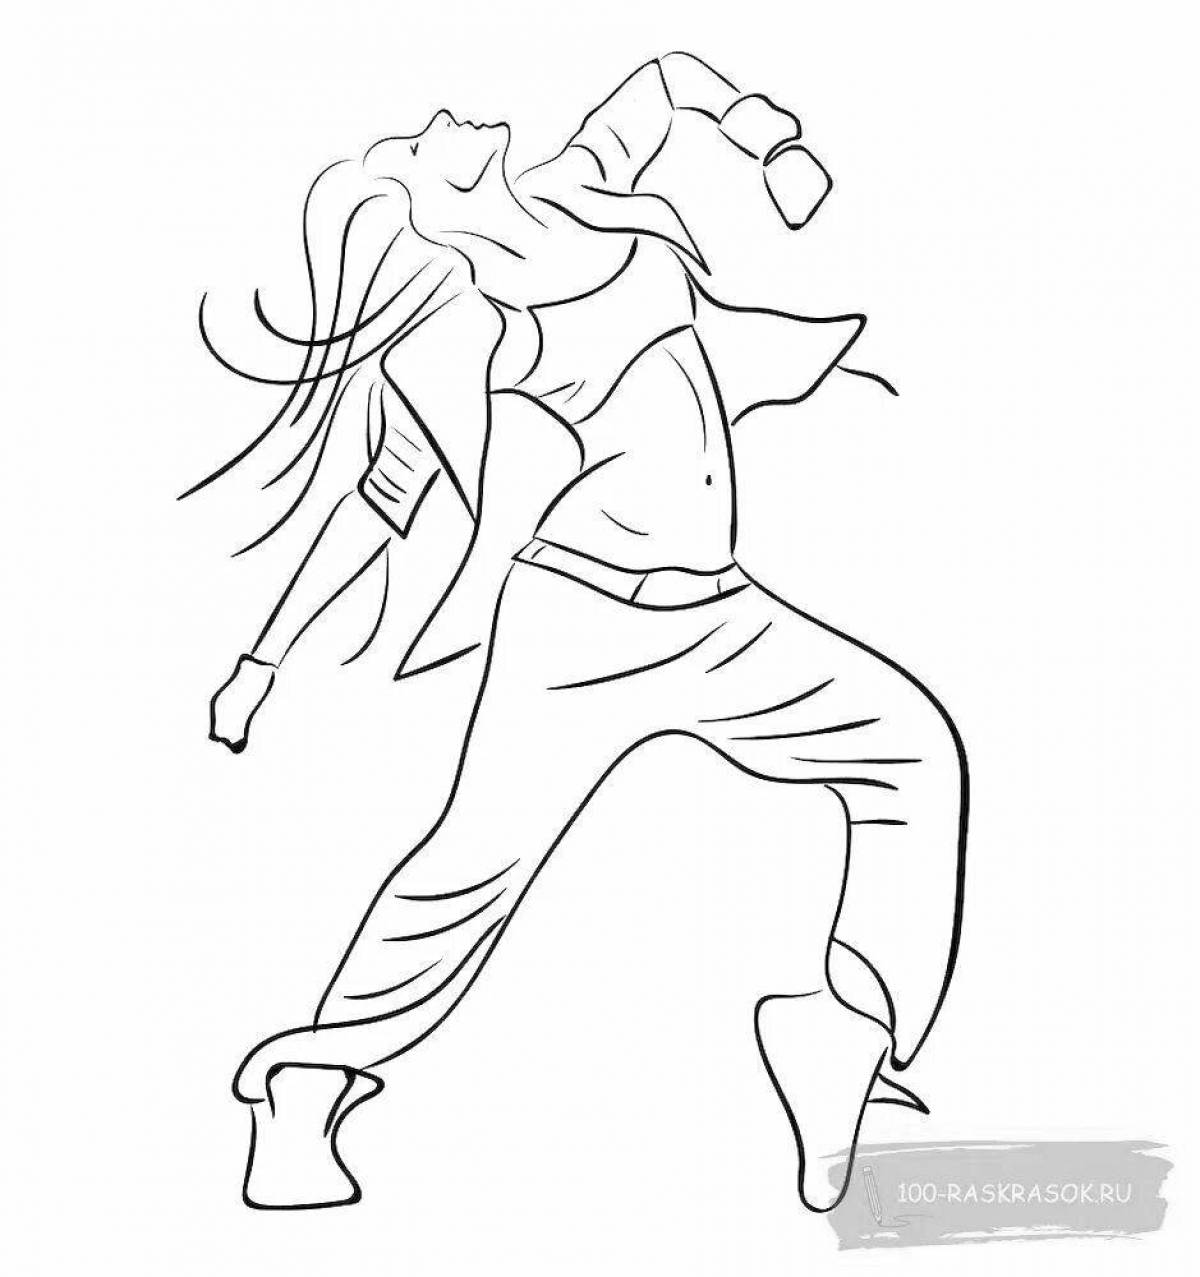 Dancing girl #10